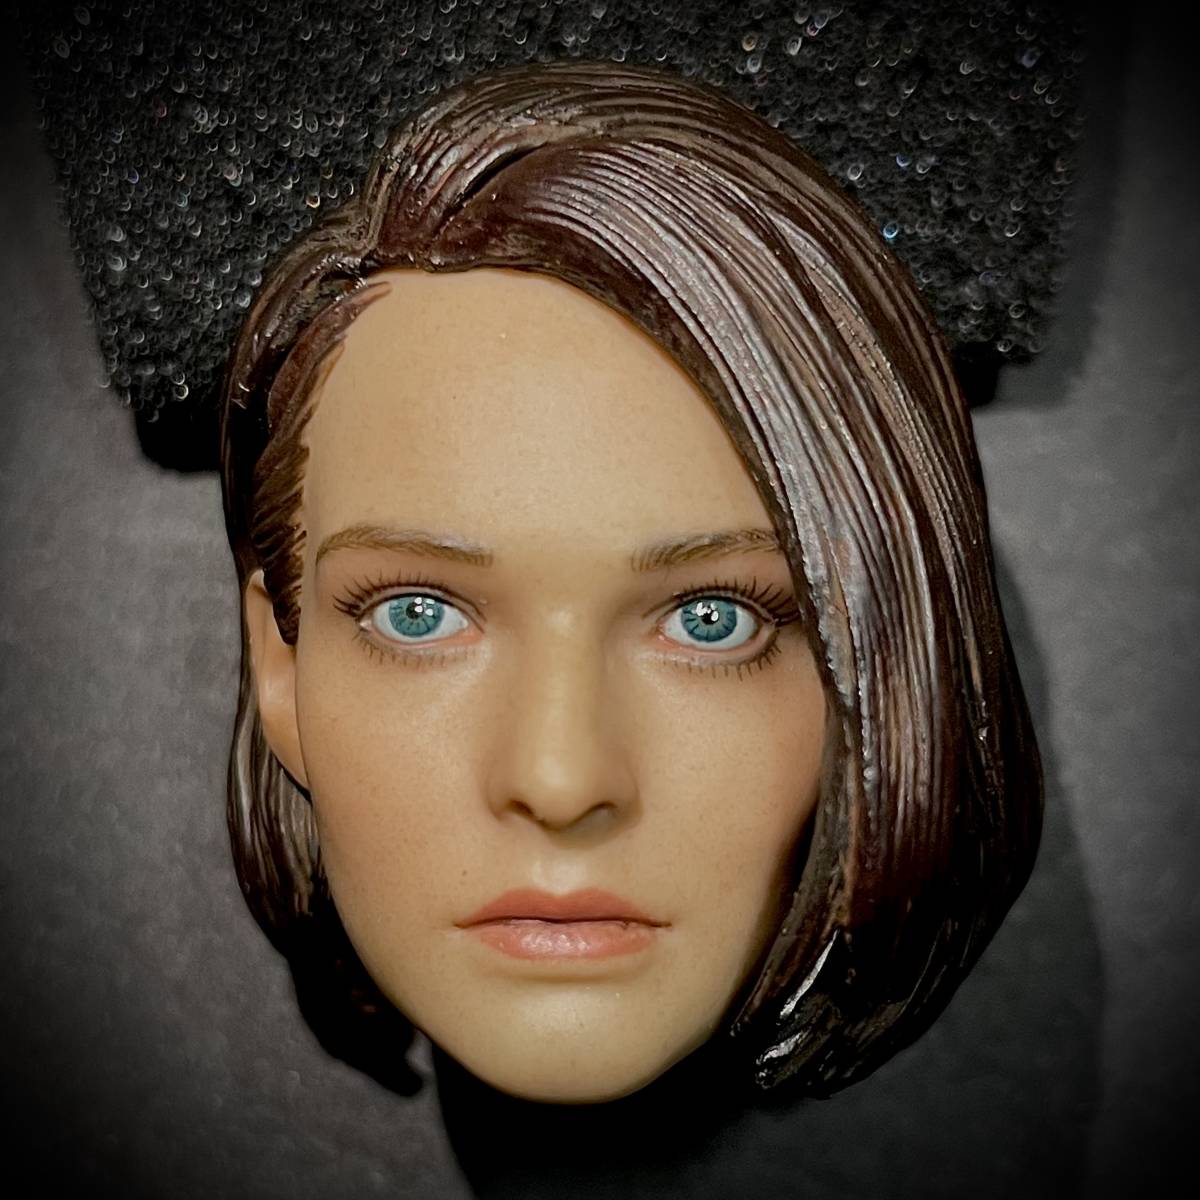 【値上げ予定】 DAFTOYS製 模型 1/6 スケール フィギュア用 部品 美人 美女 女性 ヘッド 頭 頭部 コネクター付き (未使用の画像3